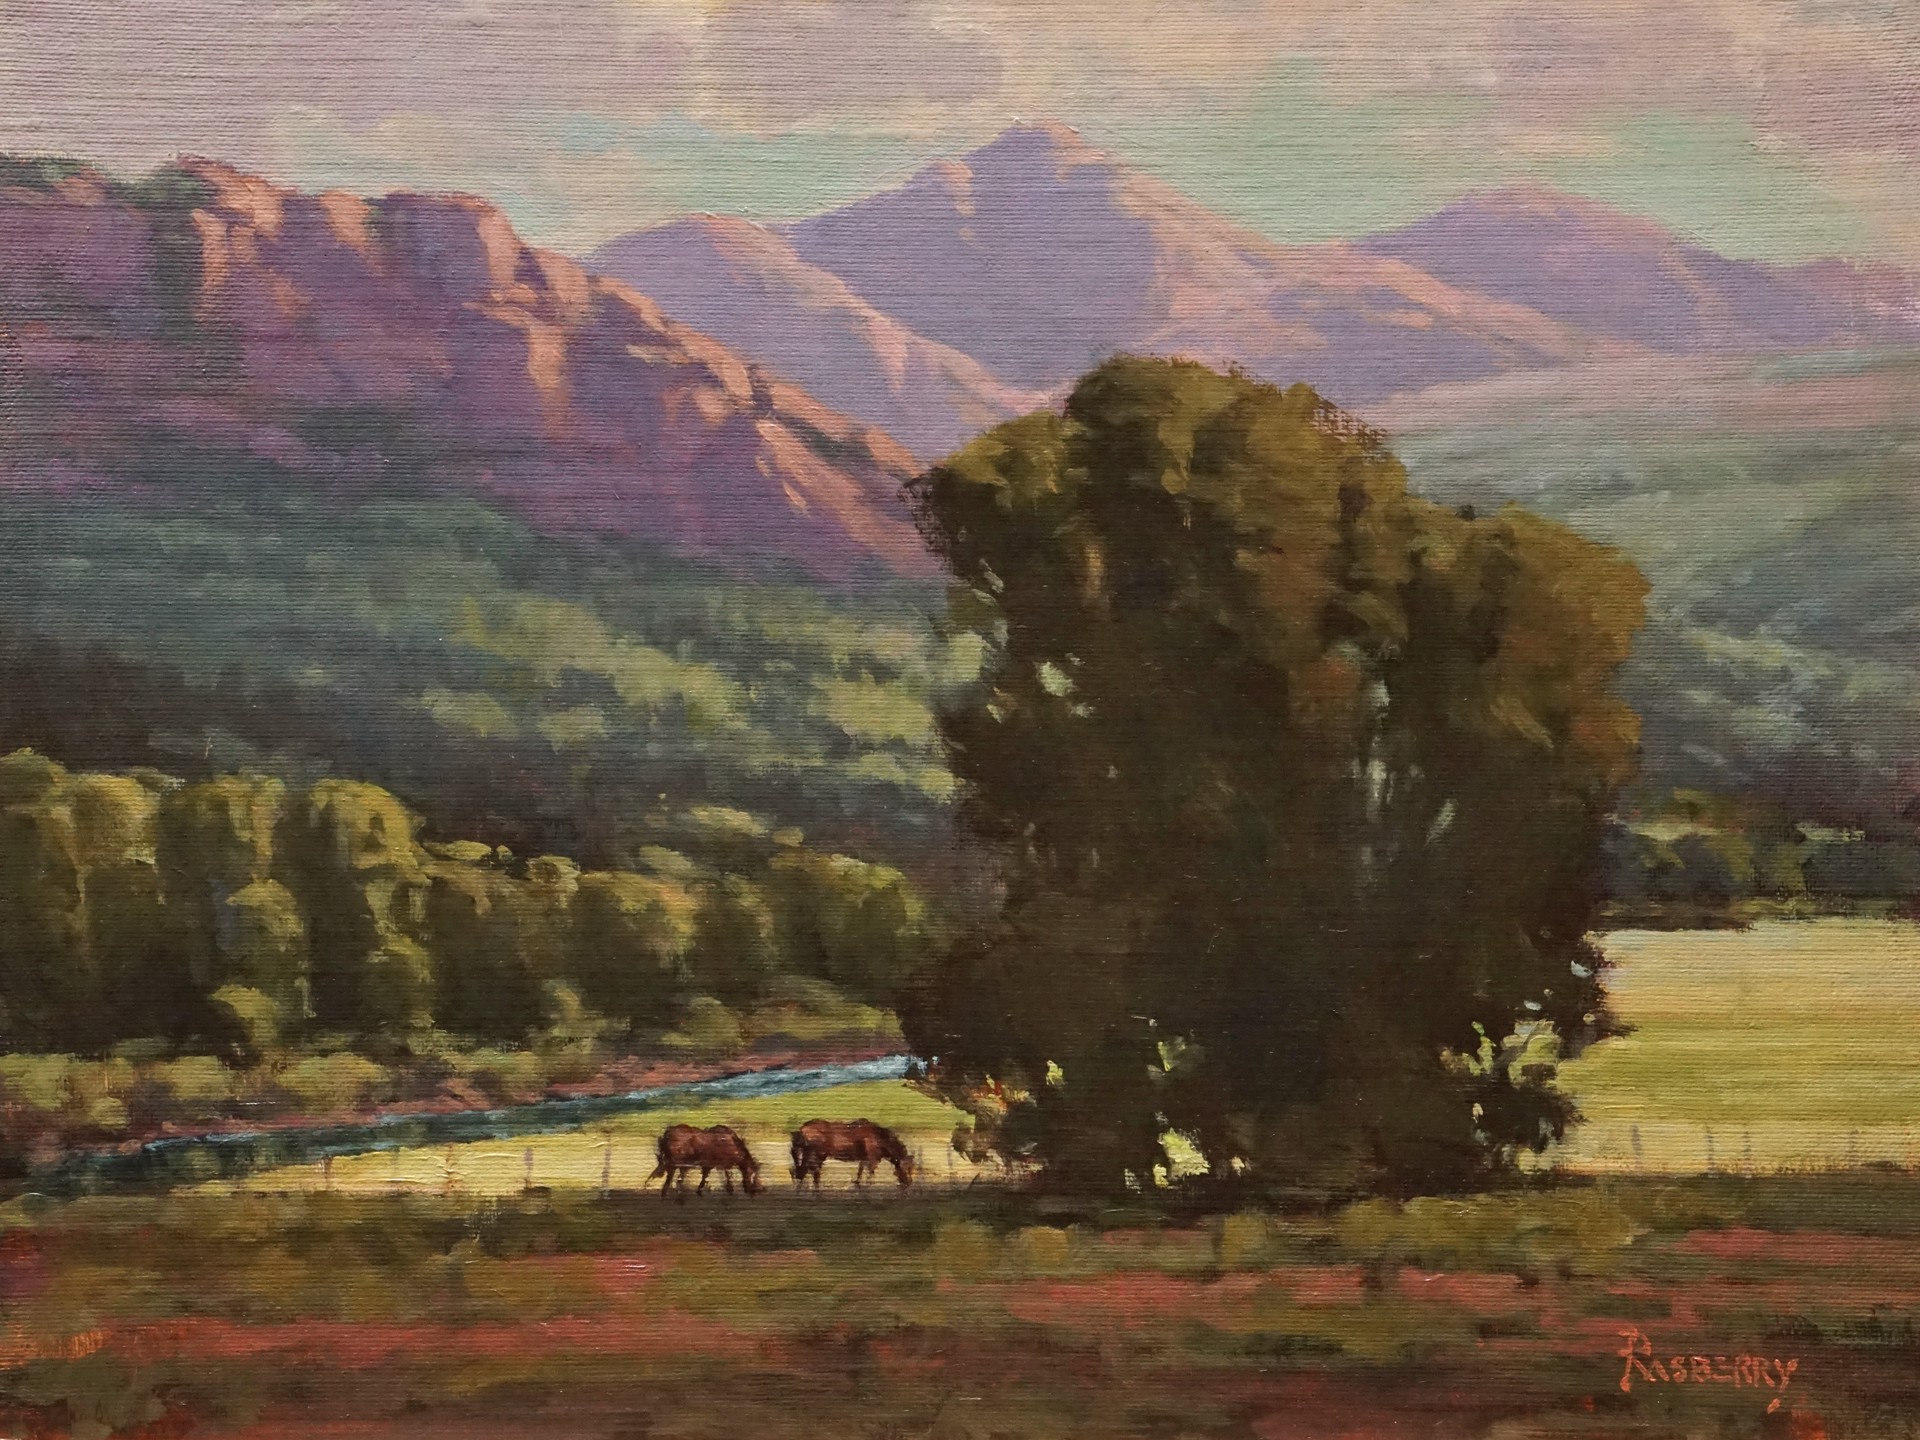 High Mountain Meadow by John Rasberry